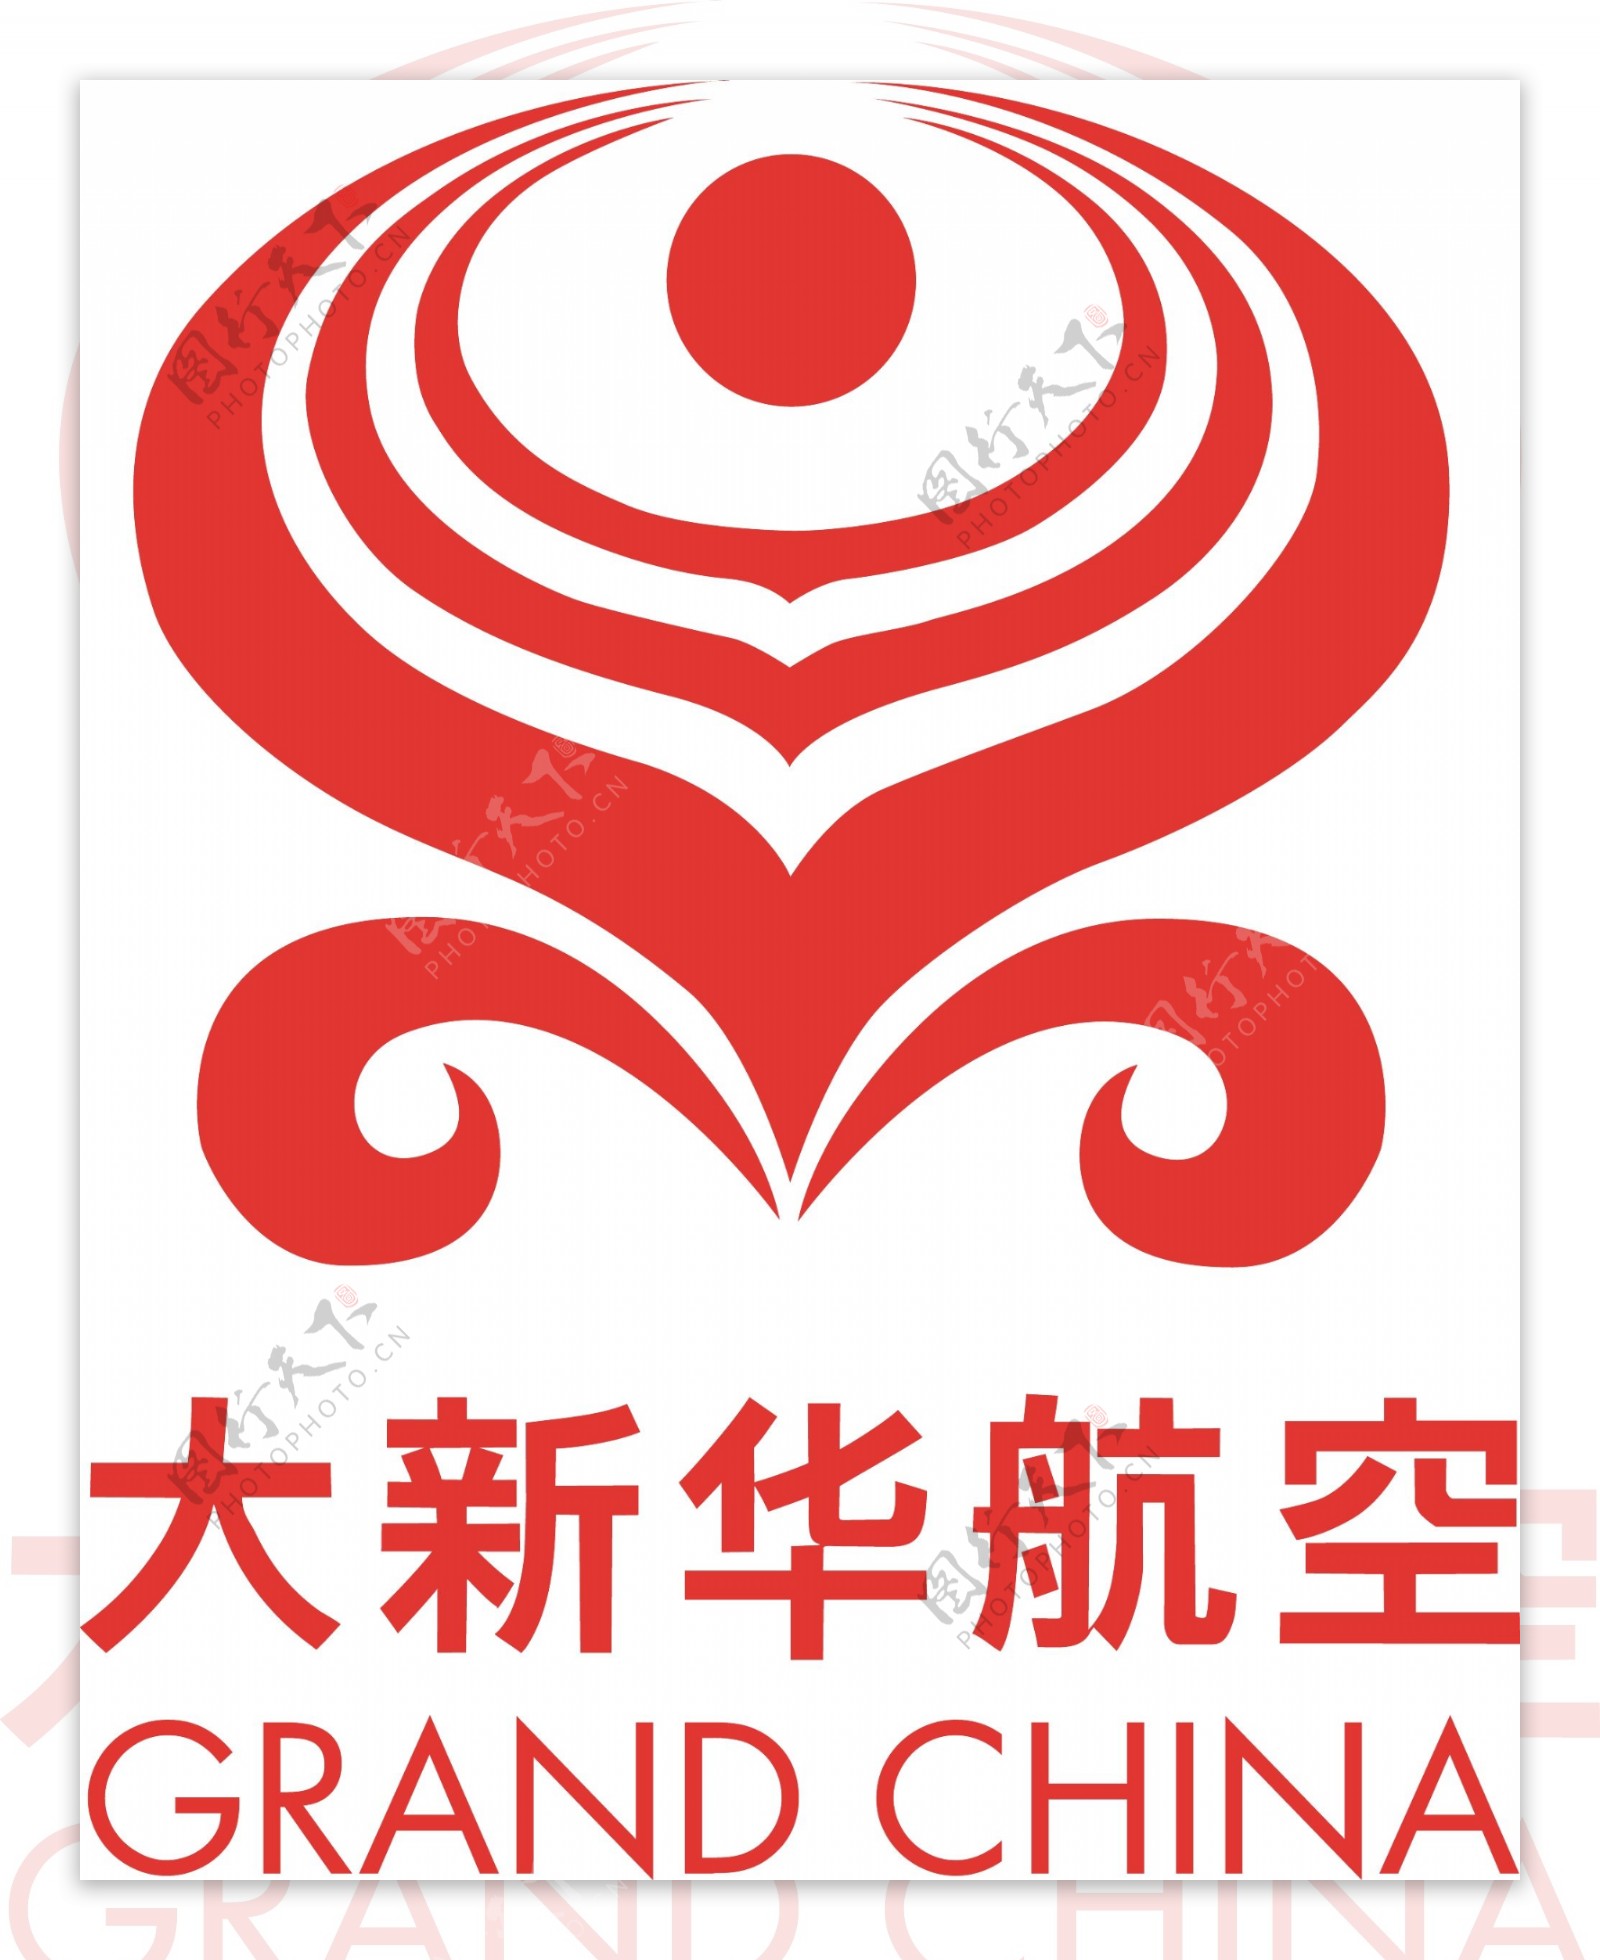 大新华航空logo